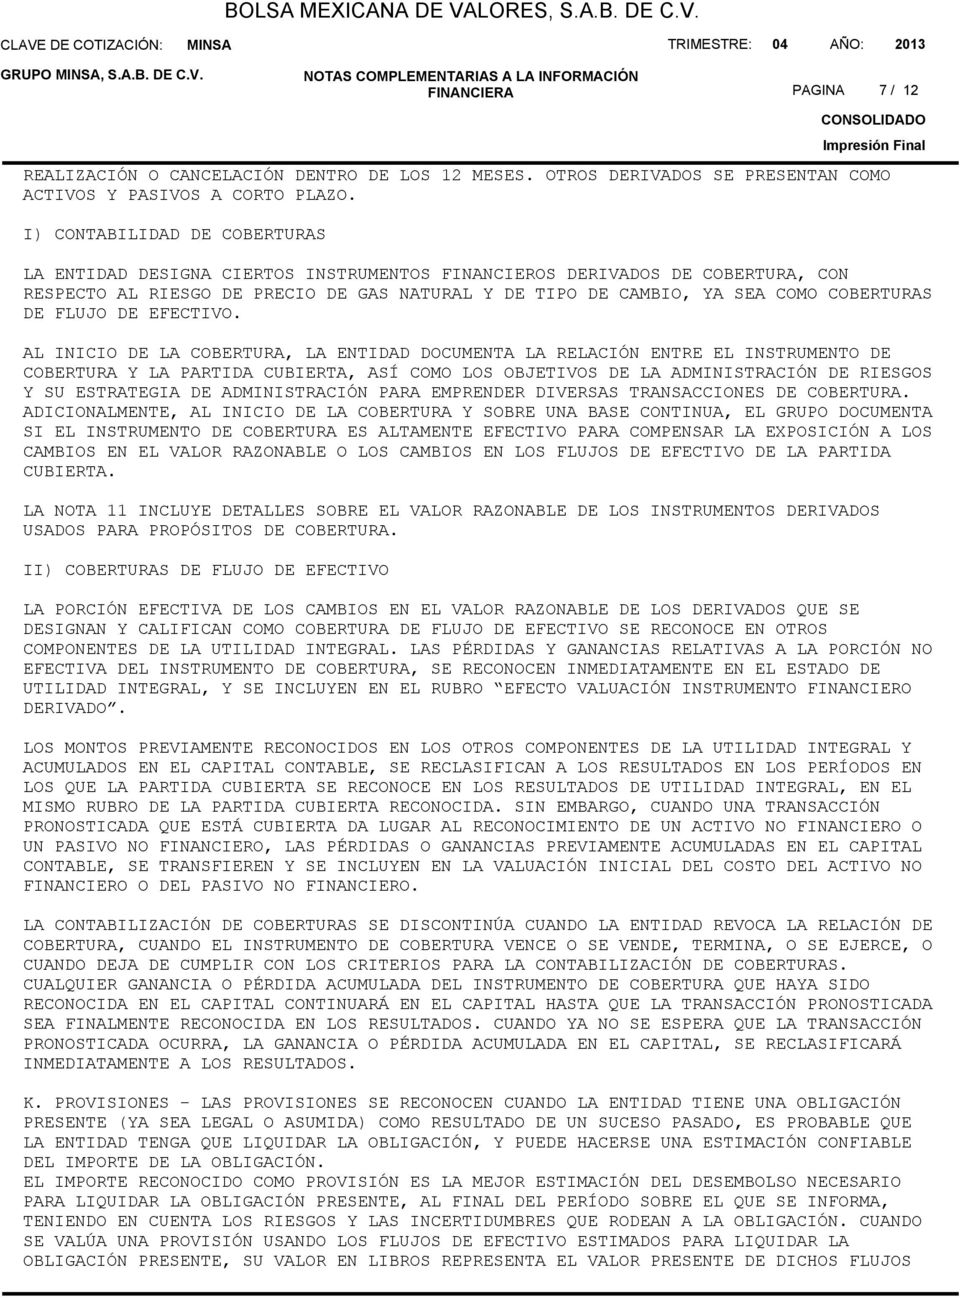 I) CONTABILIDAD DE COBERTURAS LA ENTIDAD DESIGNA CIERTOS INSTRUMENTOS FINANCIEROS DERIVADOS DE COBERTURA, CON RESPECTO AL RIESGO DE PRECIO DE GAS NATURAL Y DE TIPO DE CAMBIO, YA SEA COMO COBERTURAS